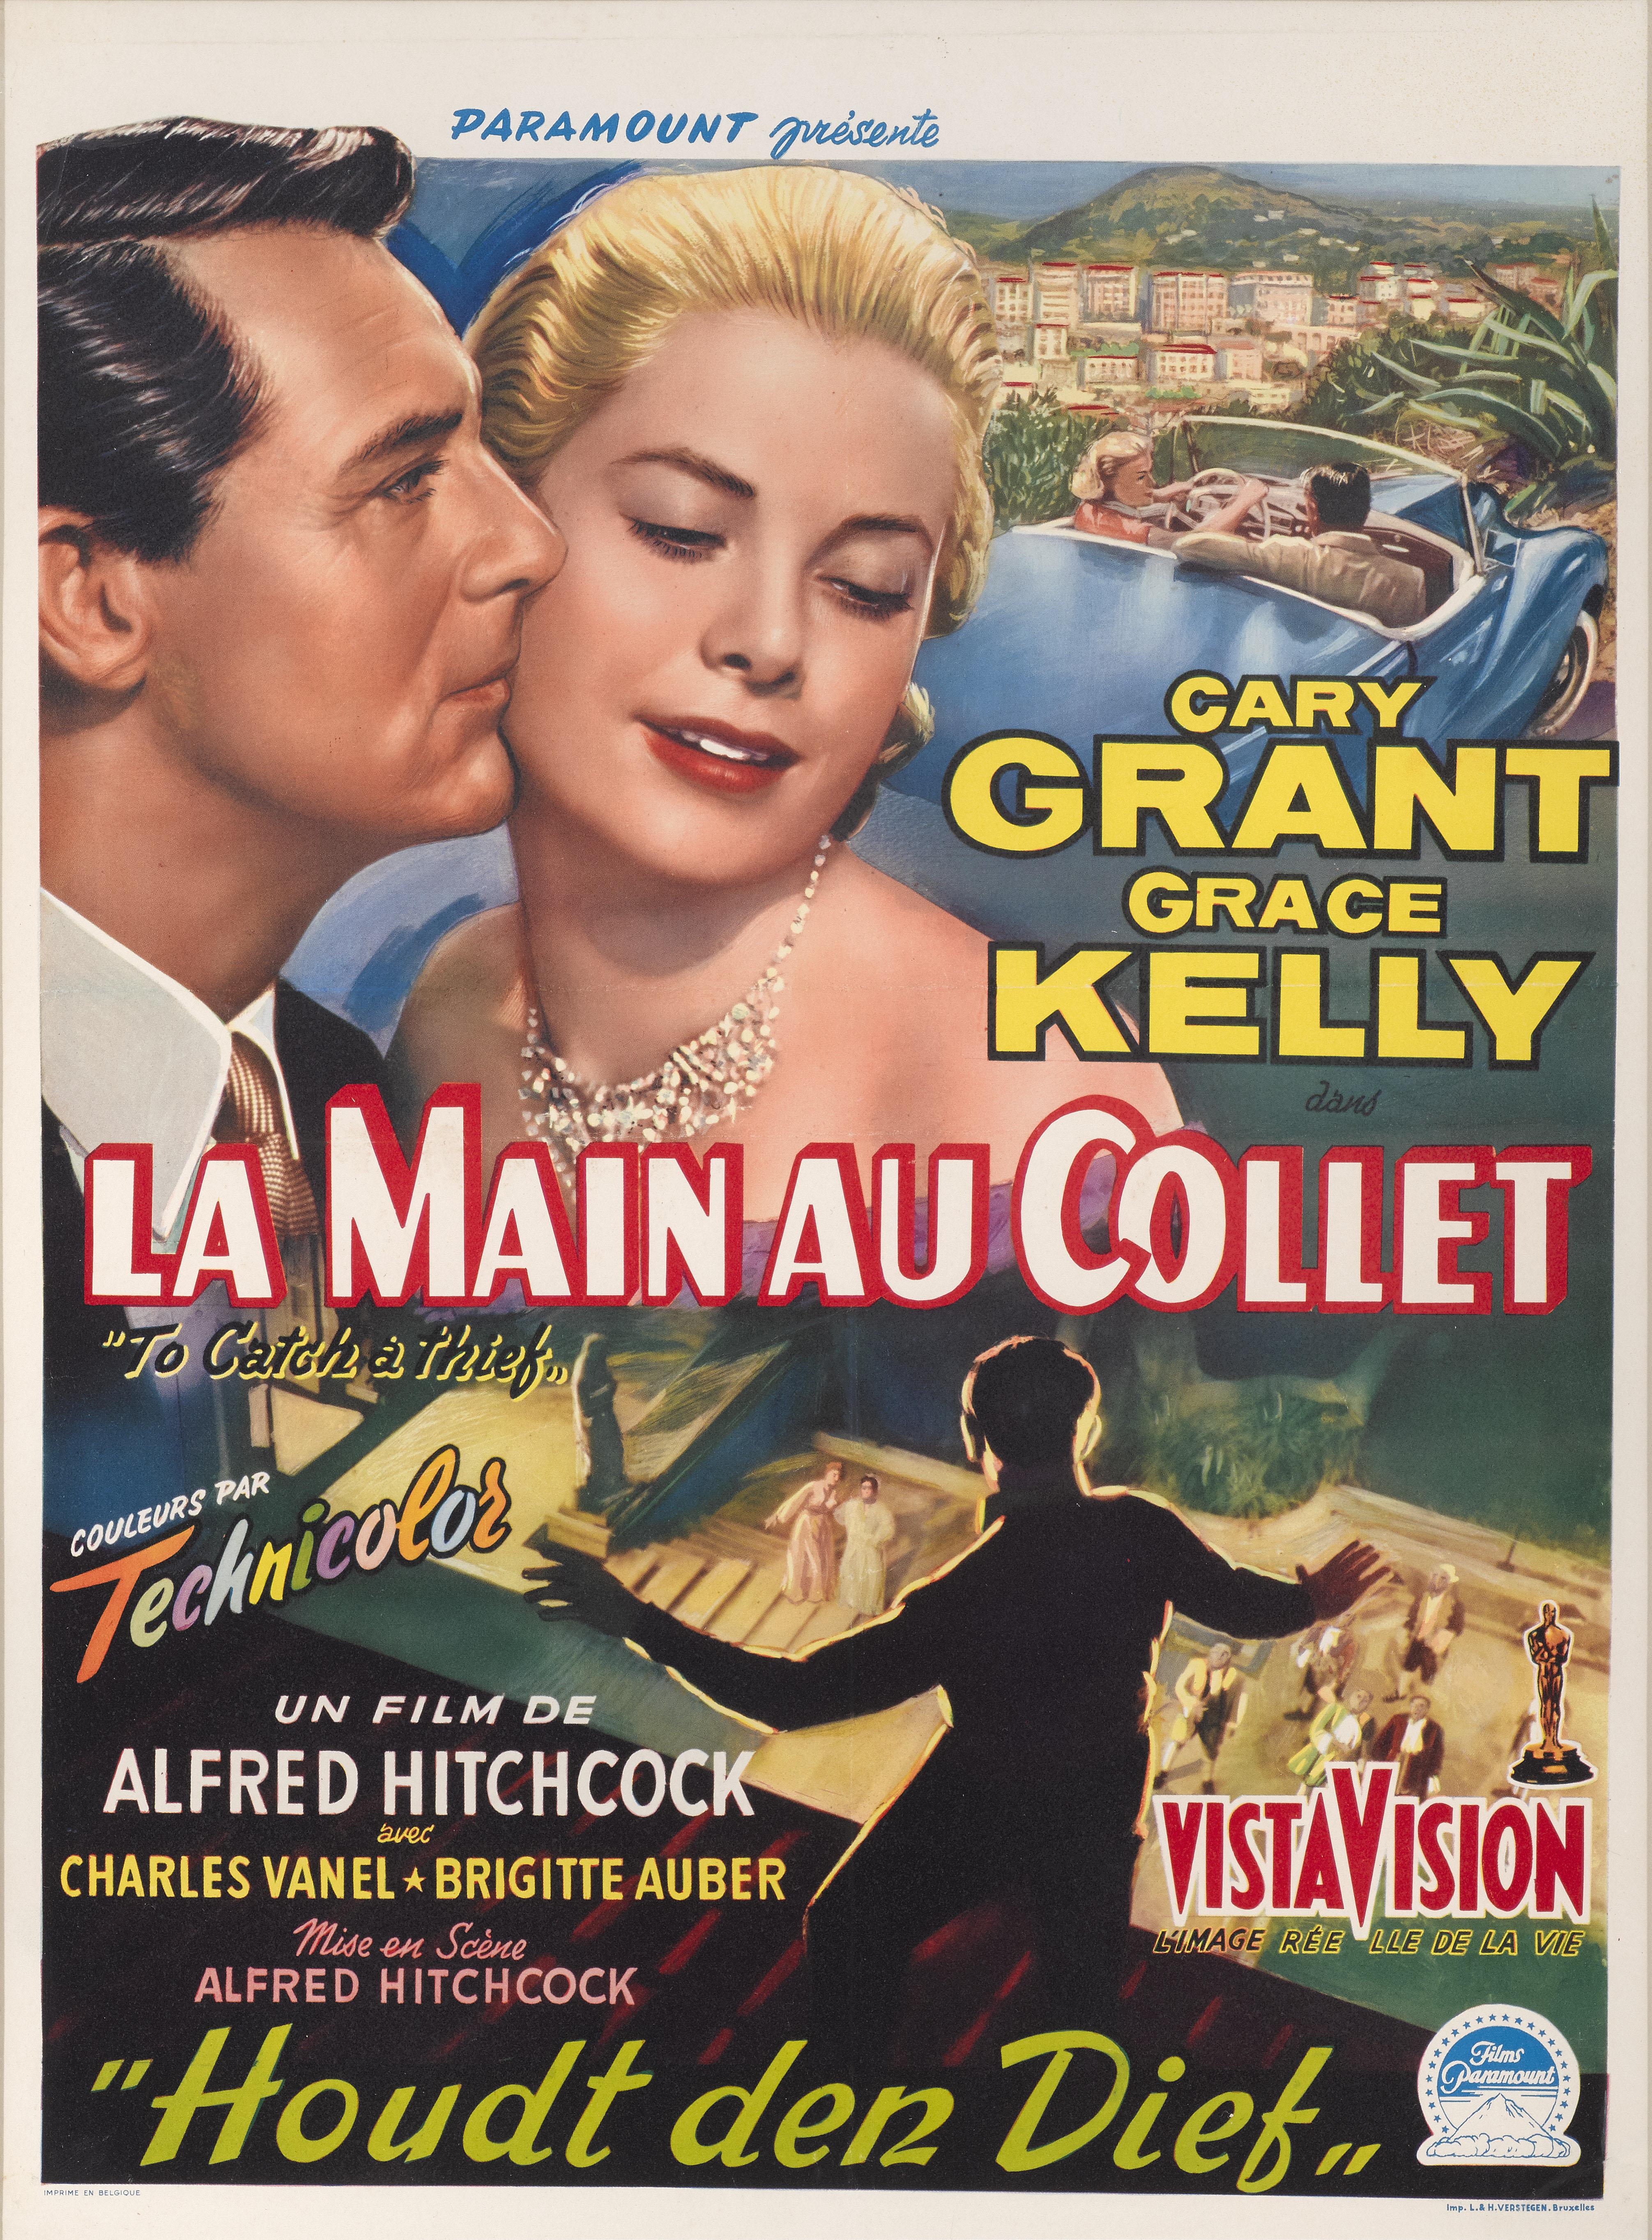 Affiche originale du film belge pour le thriller romantique classique d'Alfred Hitchcock de 1955 avec Cary Grant et Grace Kelly.
Le film a remporté l'Oscar de la meilleure photographie (Robert Burks).
Cette affiche est protégée par un papier de